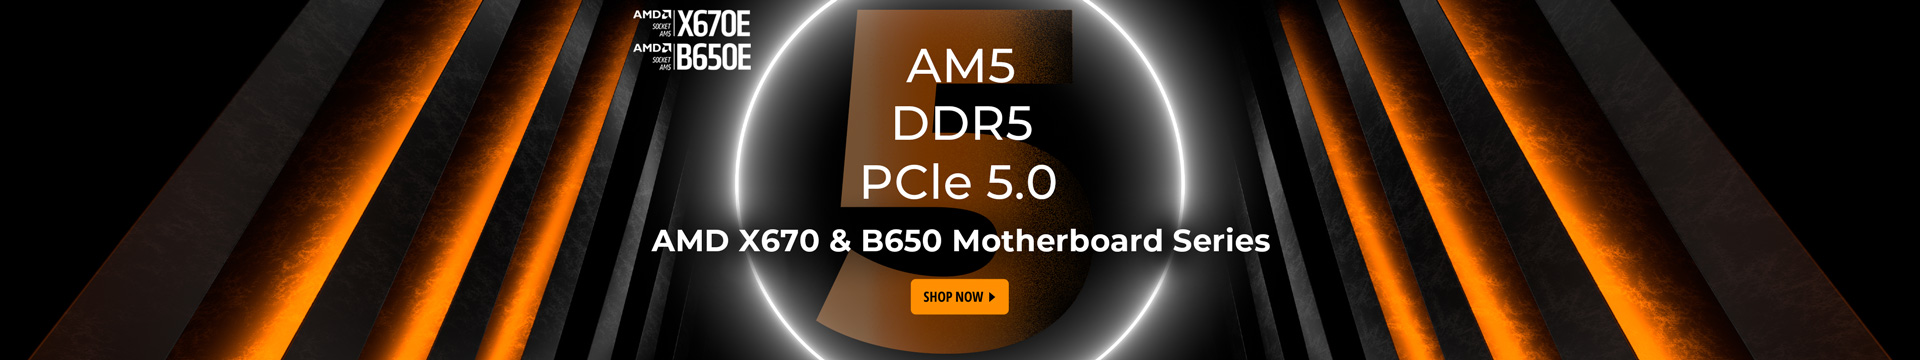 AMD DDR5 PCle 5.0